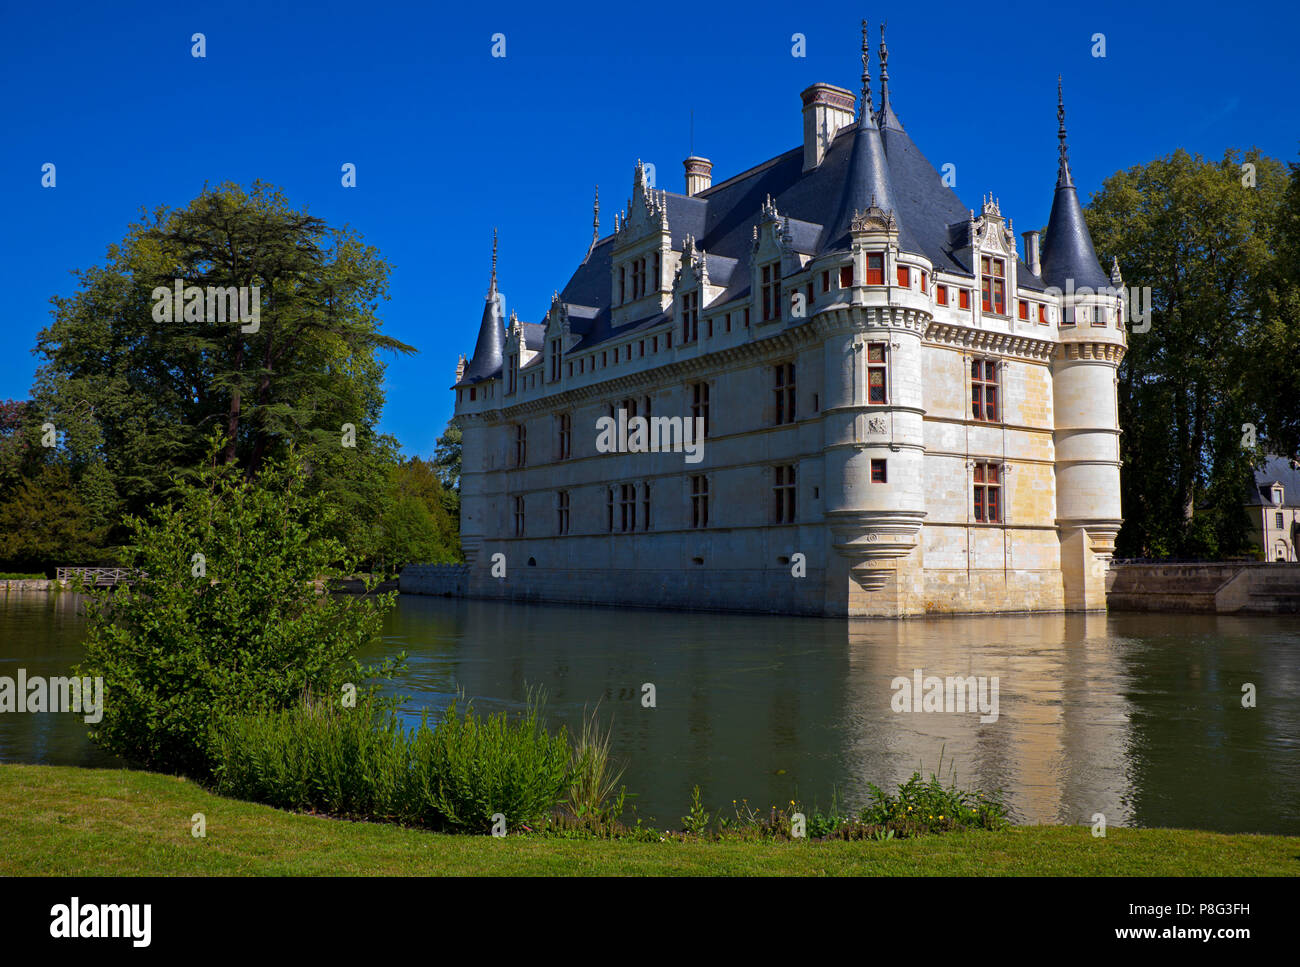 Azay Le Rideau chateau, Indre-et-Loire department, France, Europe Stock Photo